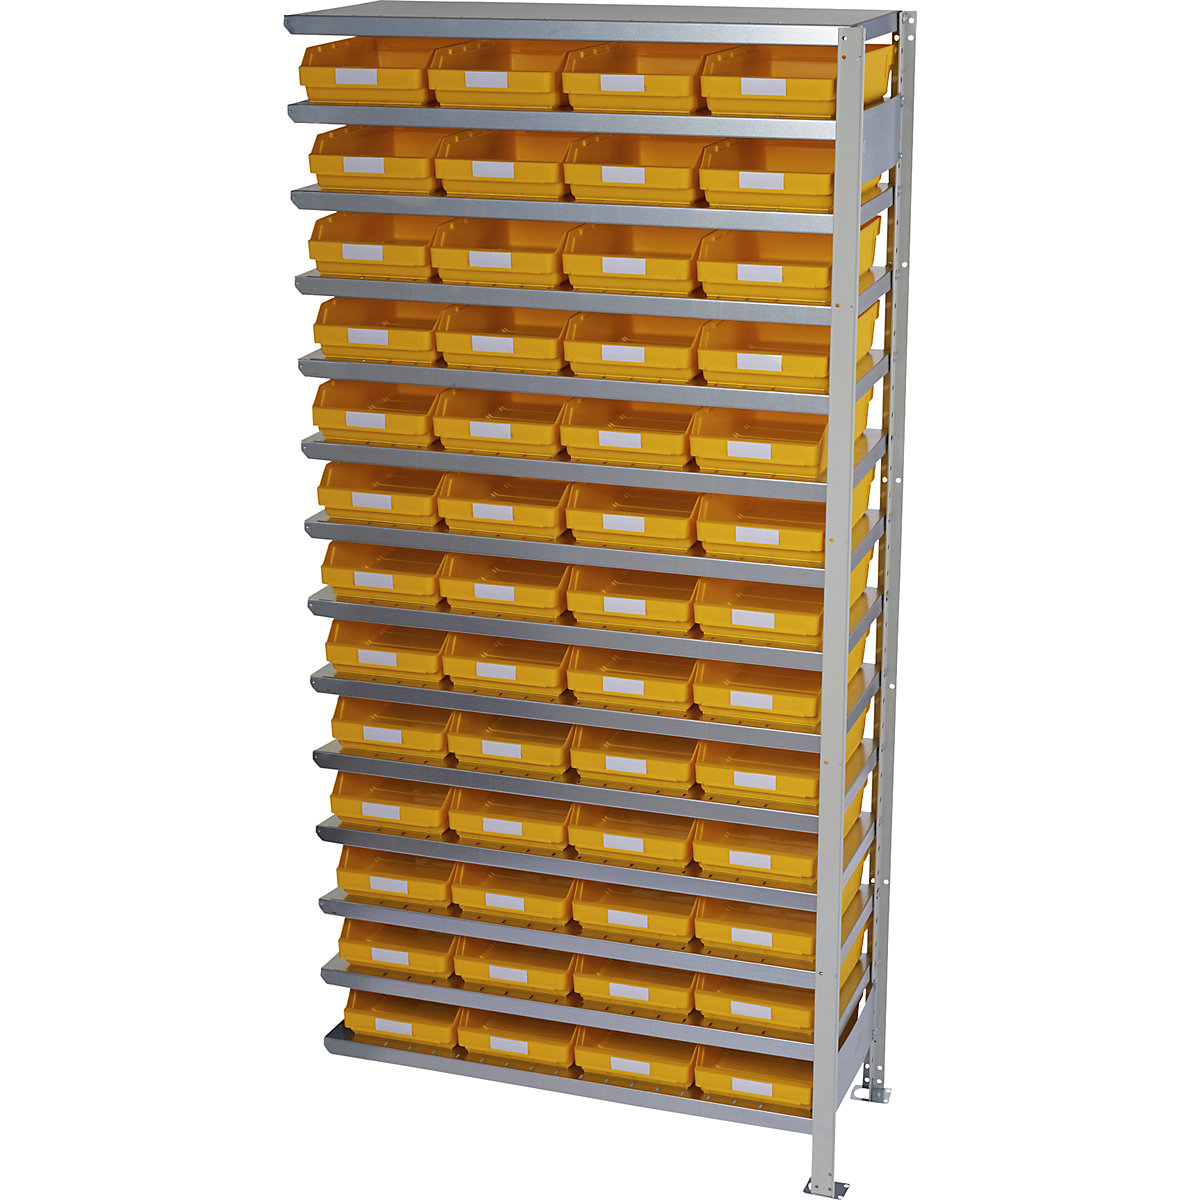 Összedugaszolós állvány dobozokkal – STEMO, állványmagasság 2100 mm, bővítő állvány, 500 mm mély, 52 sárga doboz-24